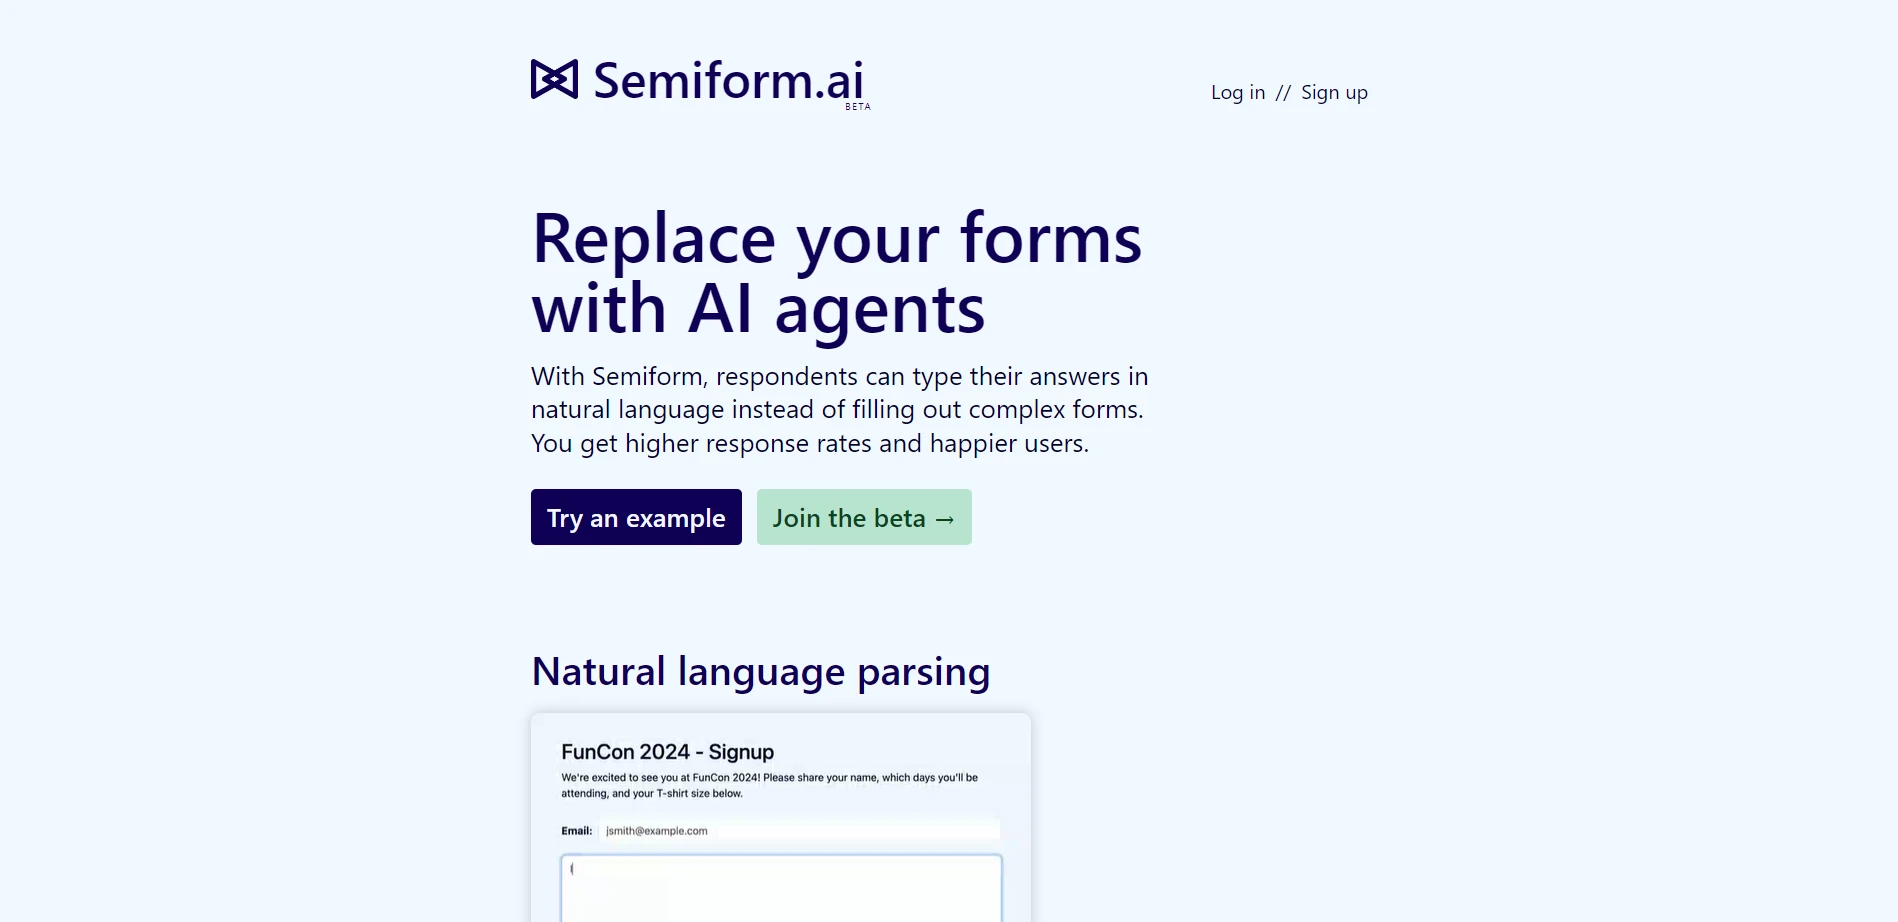 Semiform.aiwebsite picture